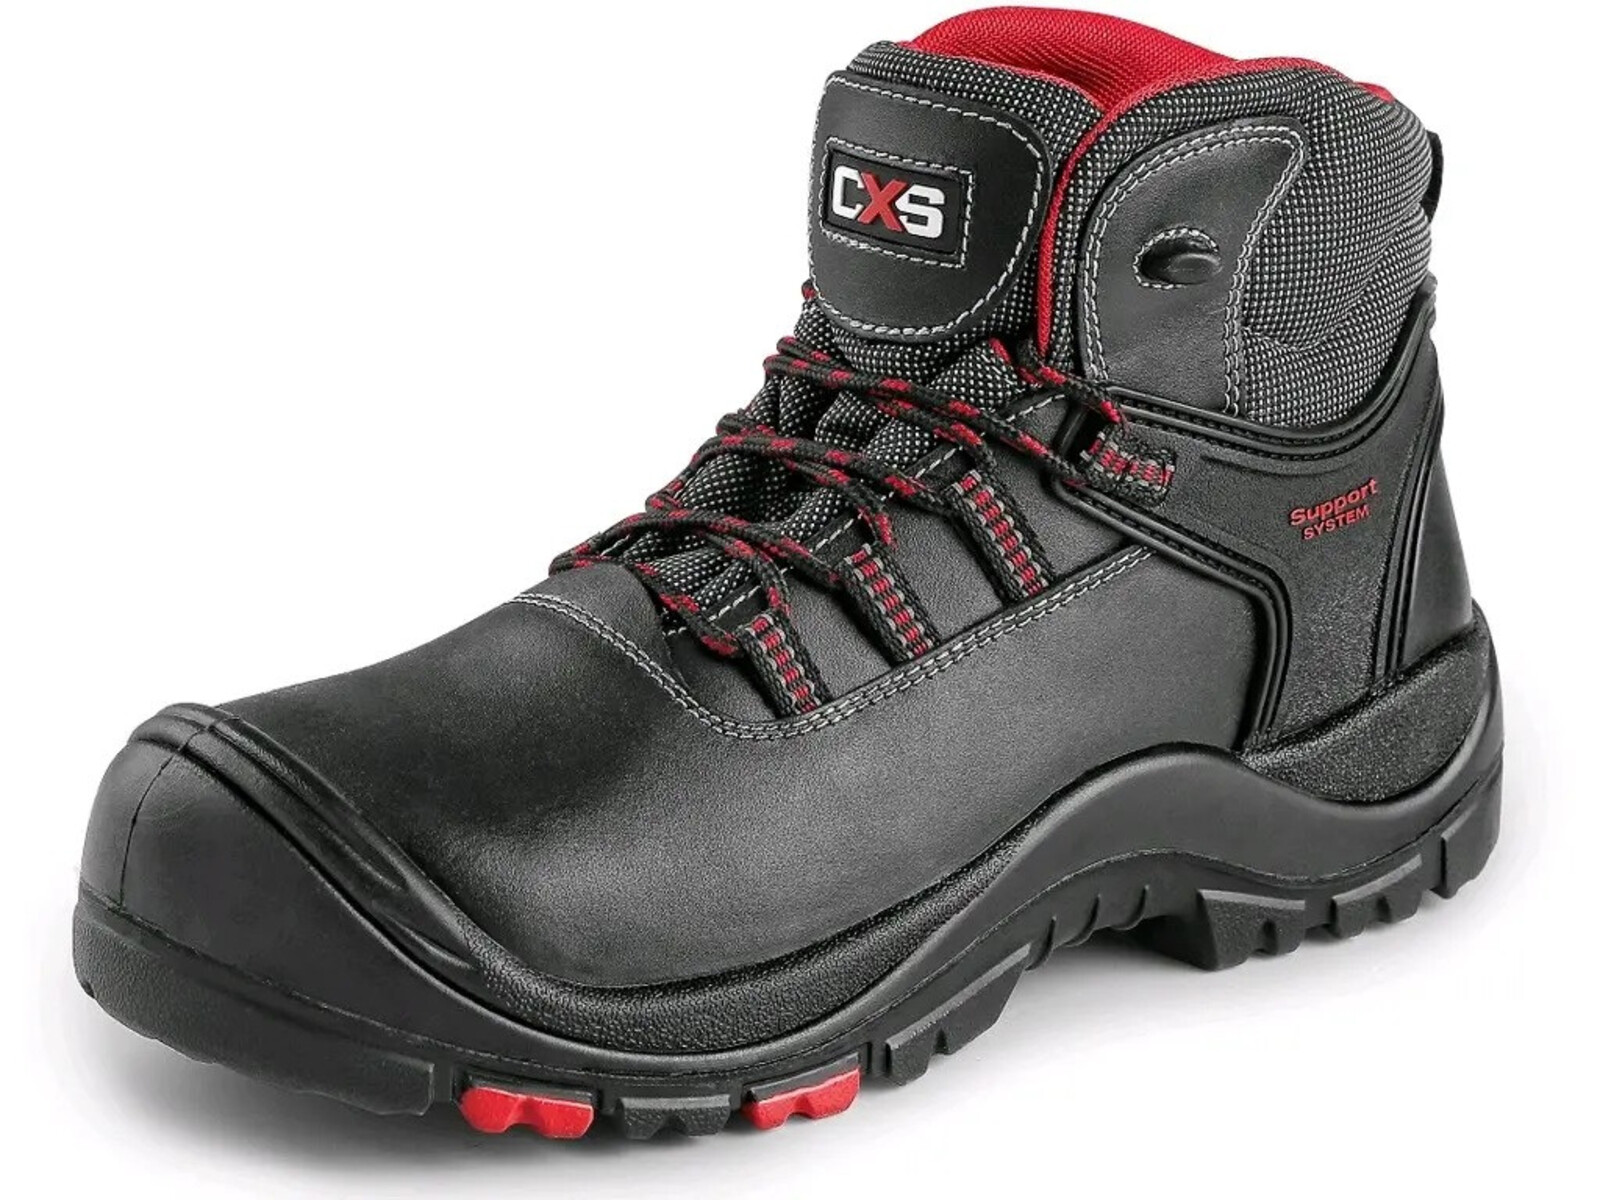 Bezpečnostná členková obuv CXS Rock Granite S3 SRC HRO MF - veľkosť: 46, farba: čierna/červená